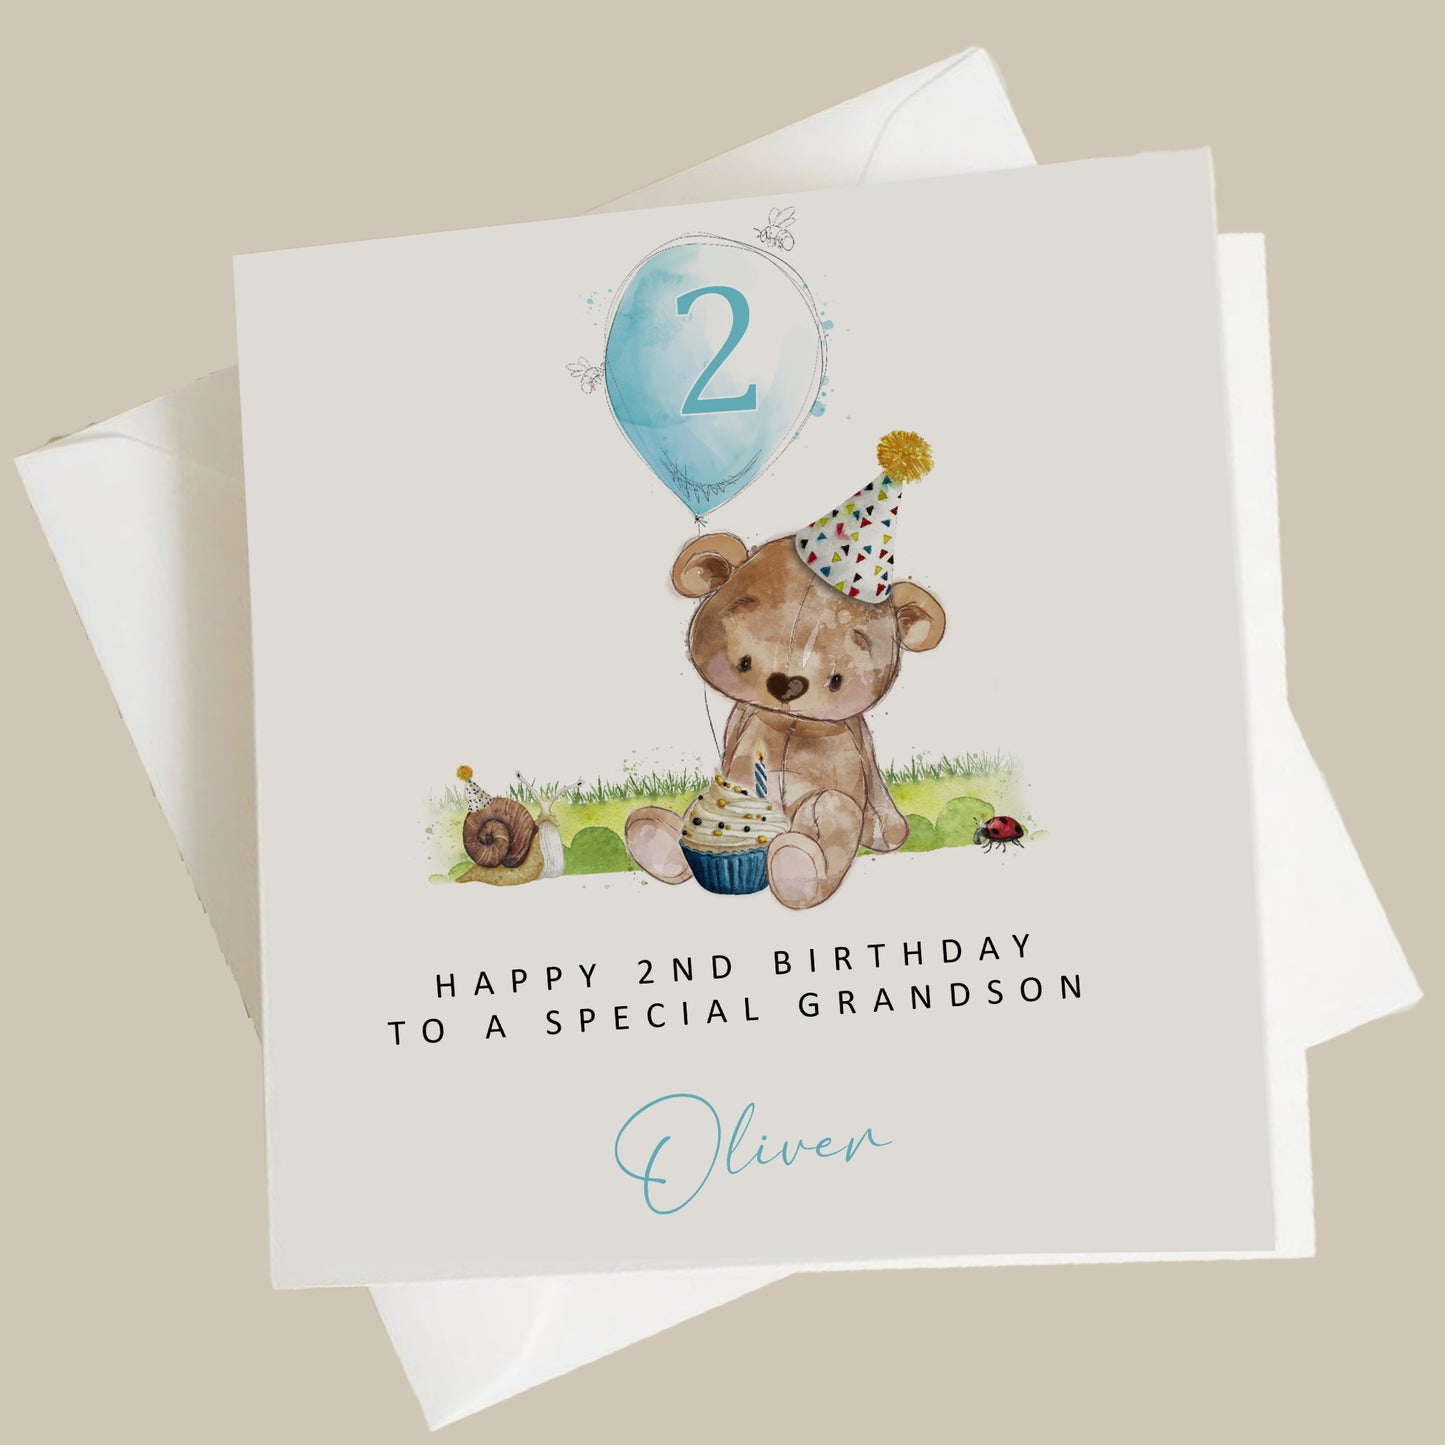 a birthday card with a teddy bear holding a cupcake